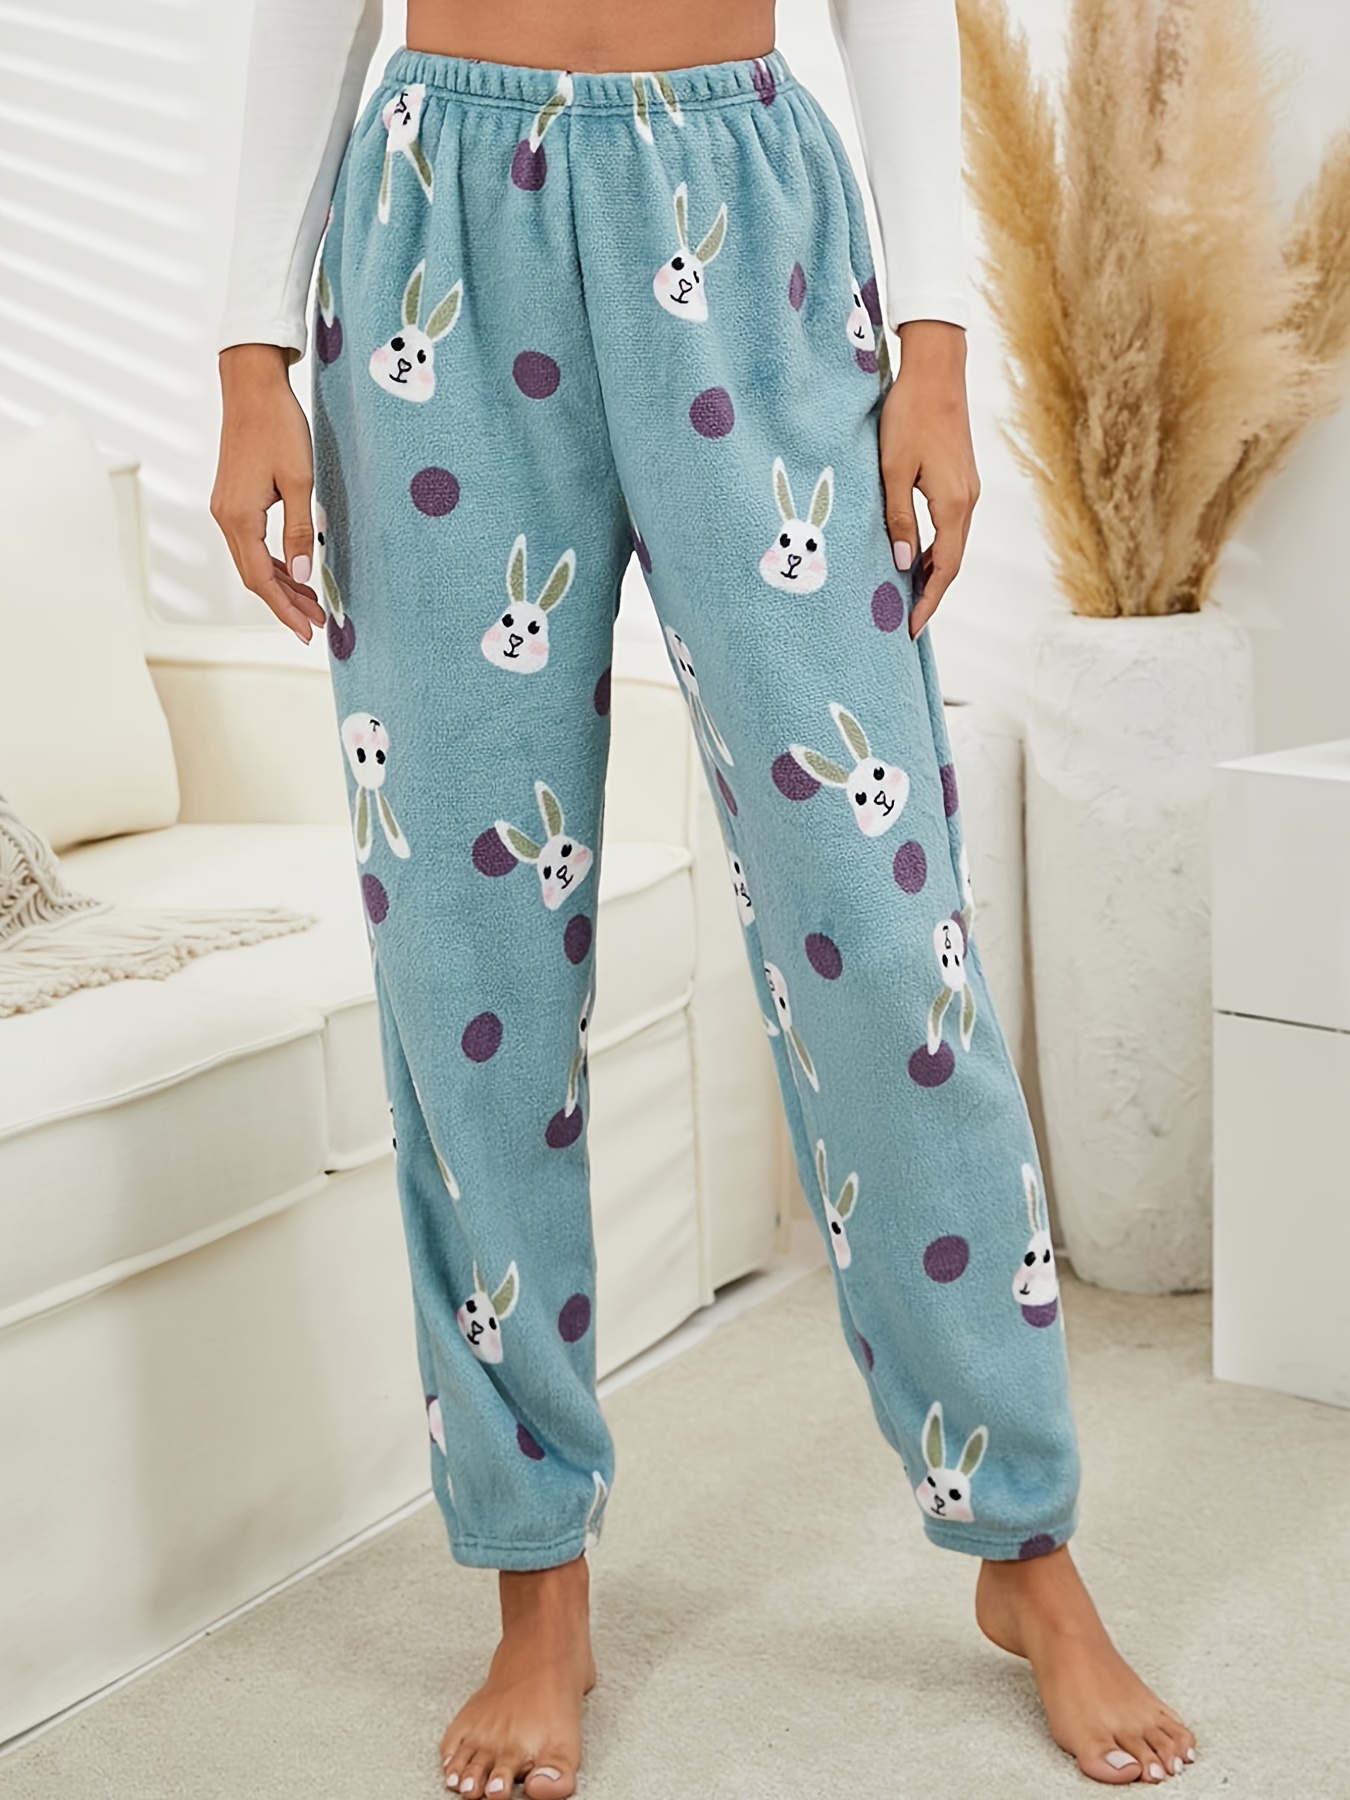 Fuzzy PJ Pants, Plush Lounge Pants